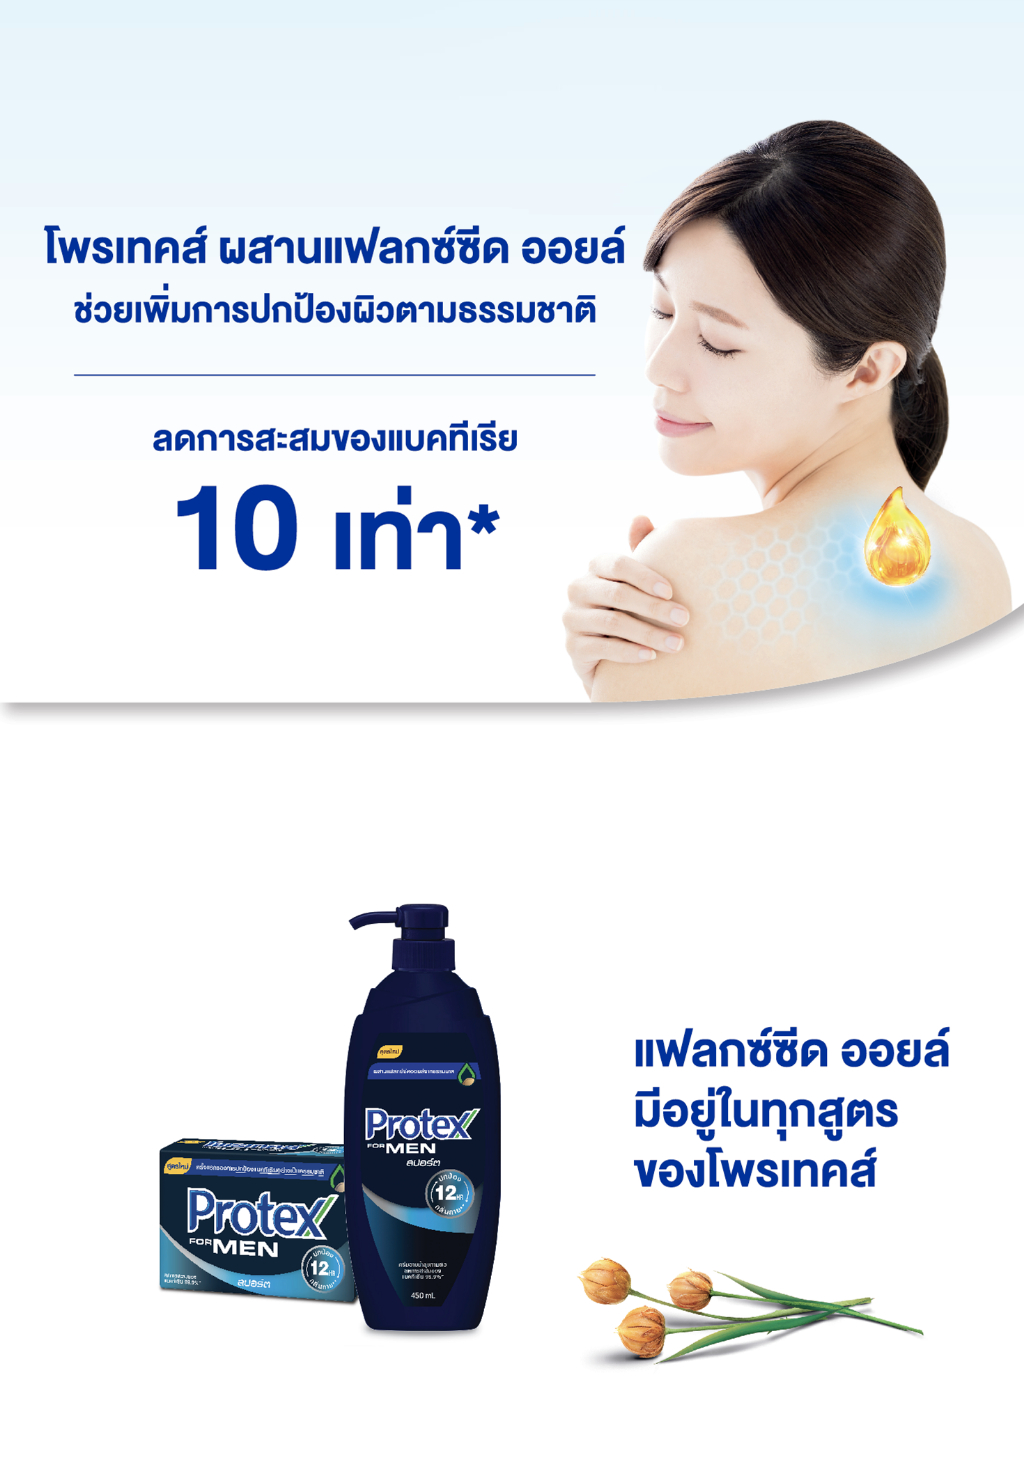 เกี่ยวกับสินค้า Protex โพรเทคส์ ฟอร์เมน สปอร์ต 450 มล. ขวดปั๊ม รวม 4 ขวด ให้ความรู้สึกสะอาดสดชื่น (ครีมอาบน้ำ) Protex For Men Sport Shower Cream 450 ml Pump x4